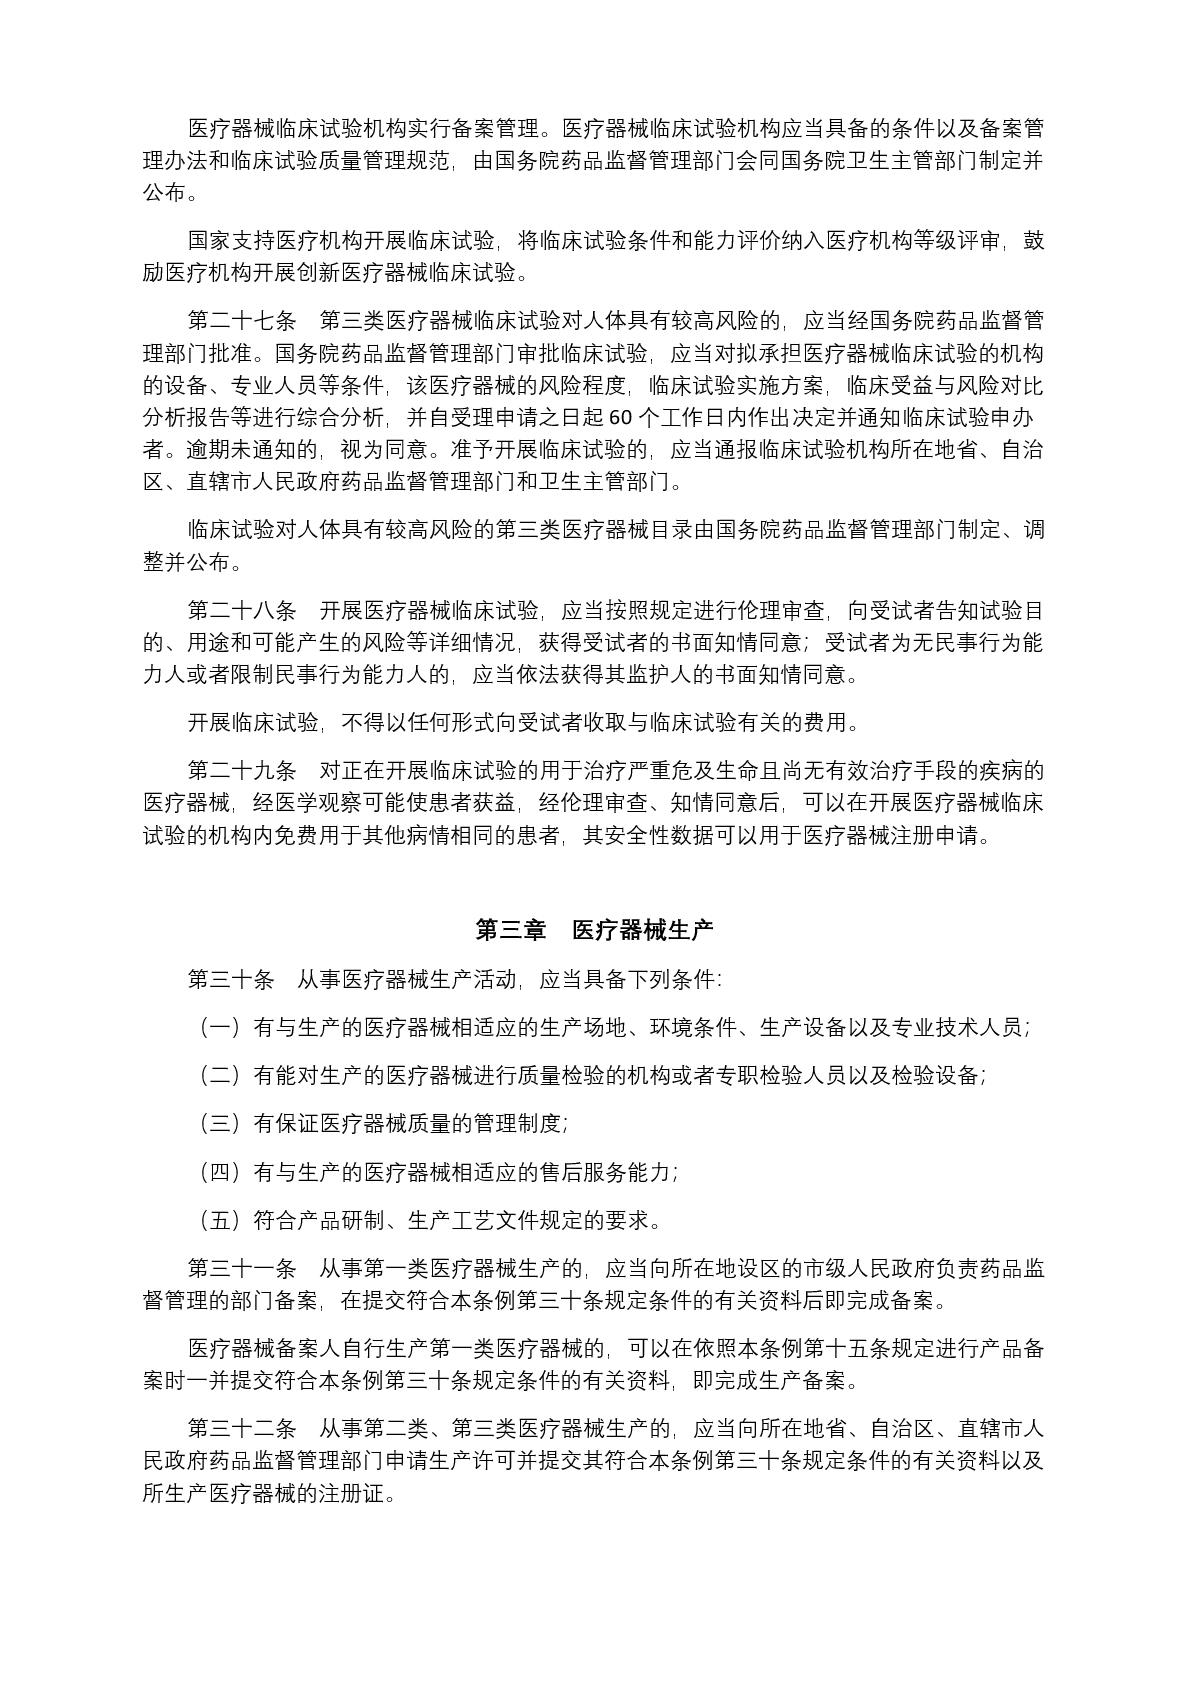 中华人民共和国国务院令第739号(1) (1)-006.jpg